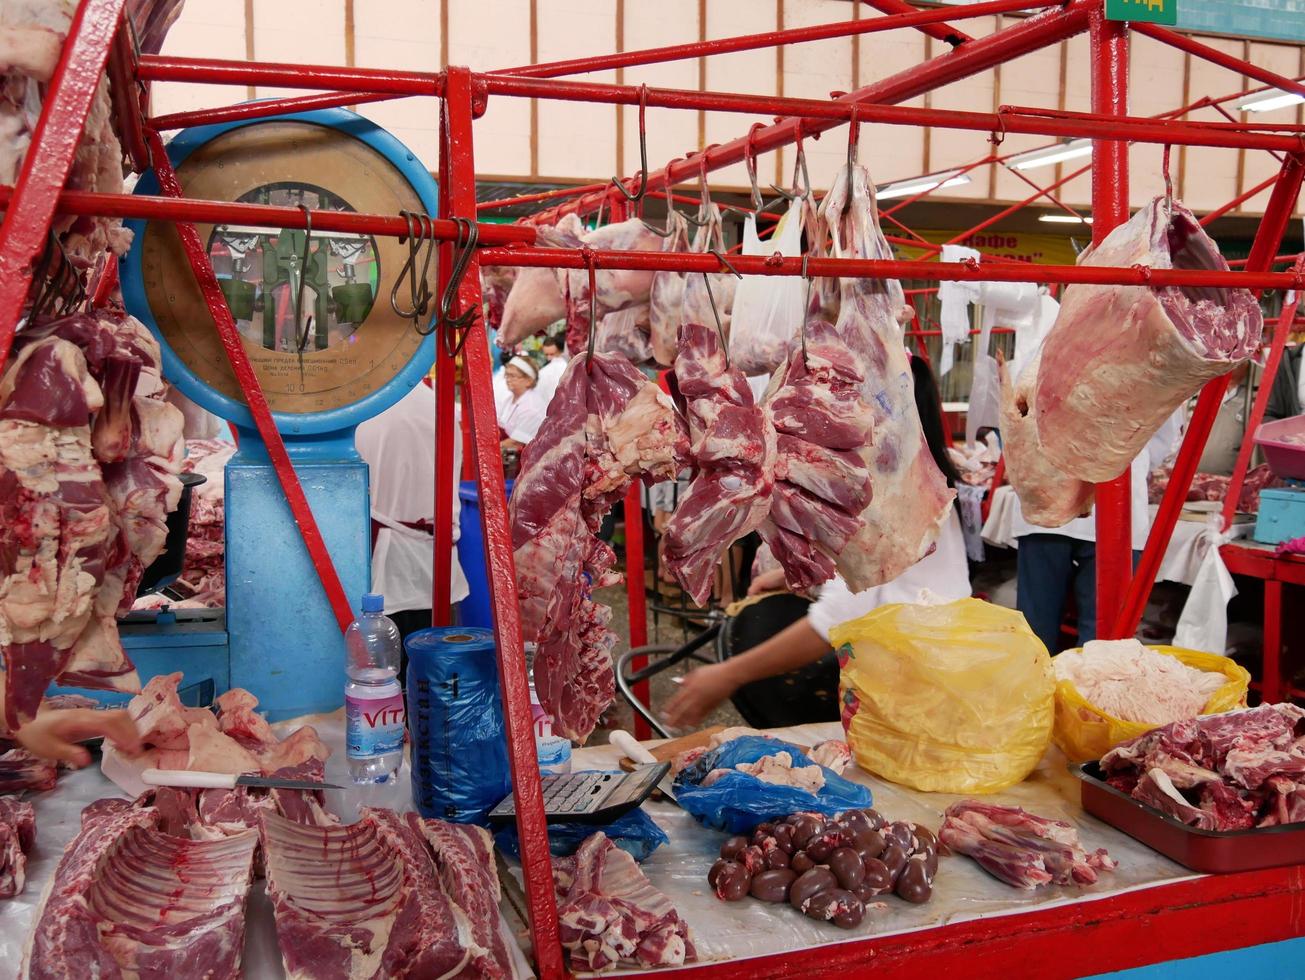 Almaty, kazakistan, 2019 - persone nel il carne sezione di il famoso verde bazar di Almaty, kazakistan, con merce su Schermo. foto